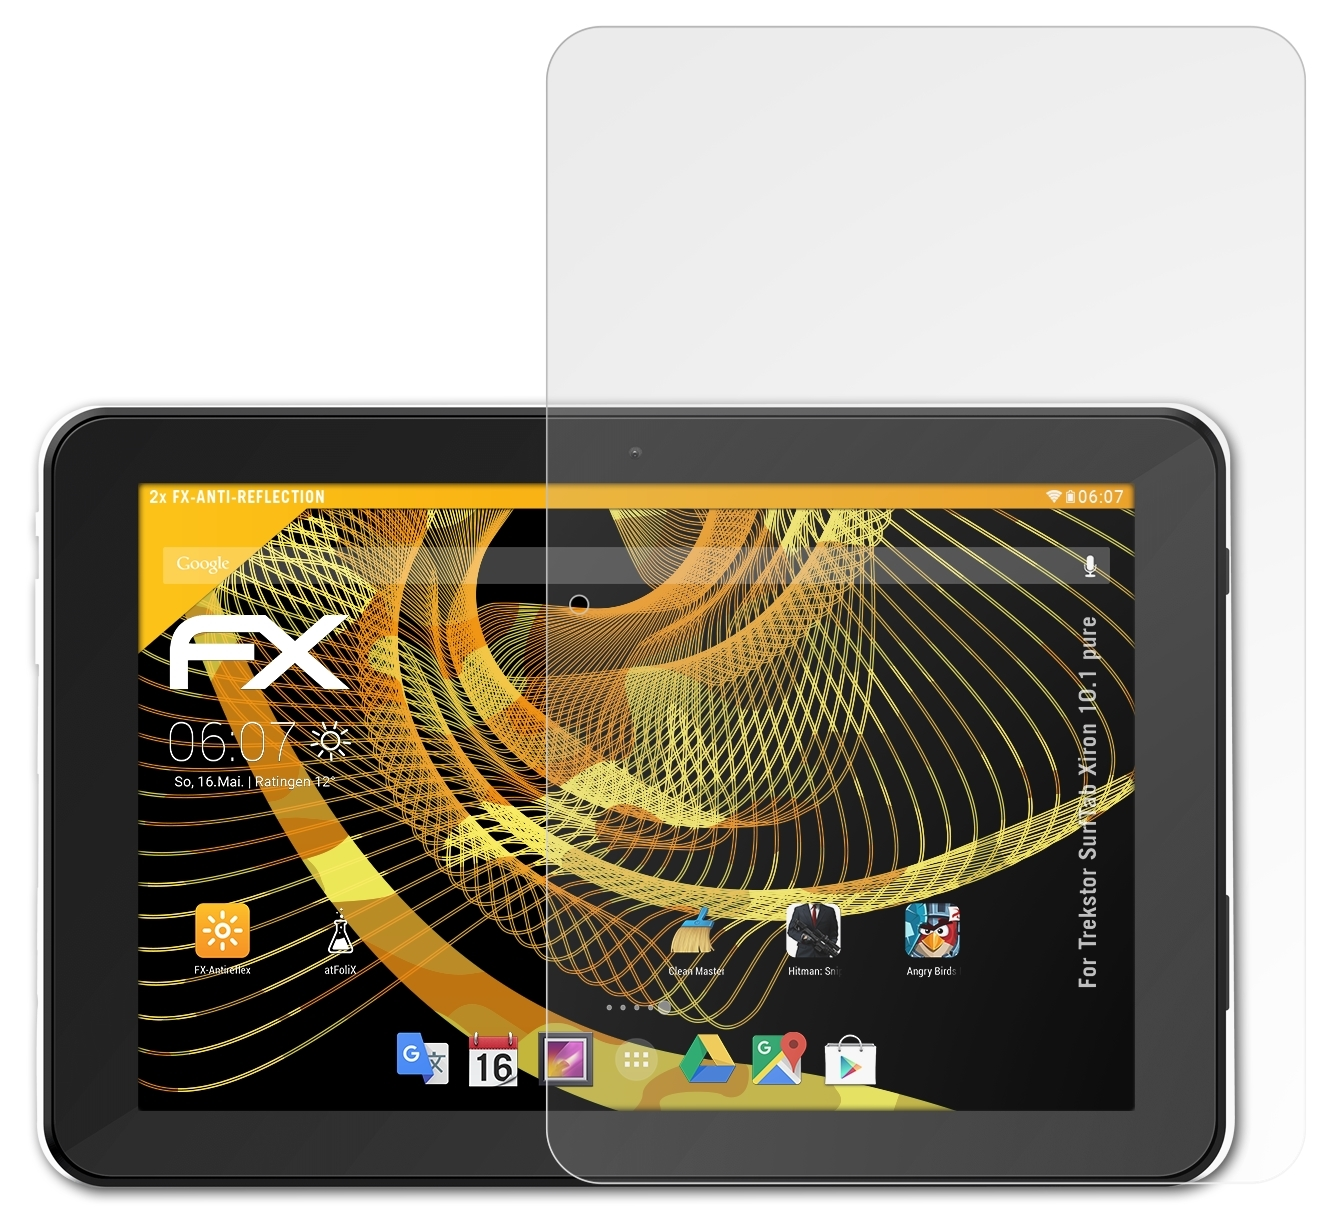 FX-Antireflex Displayschutz(für pure) ATFOLIX Trekstor Xiron 2x SurfTab 10.1